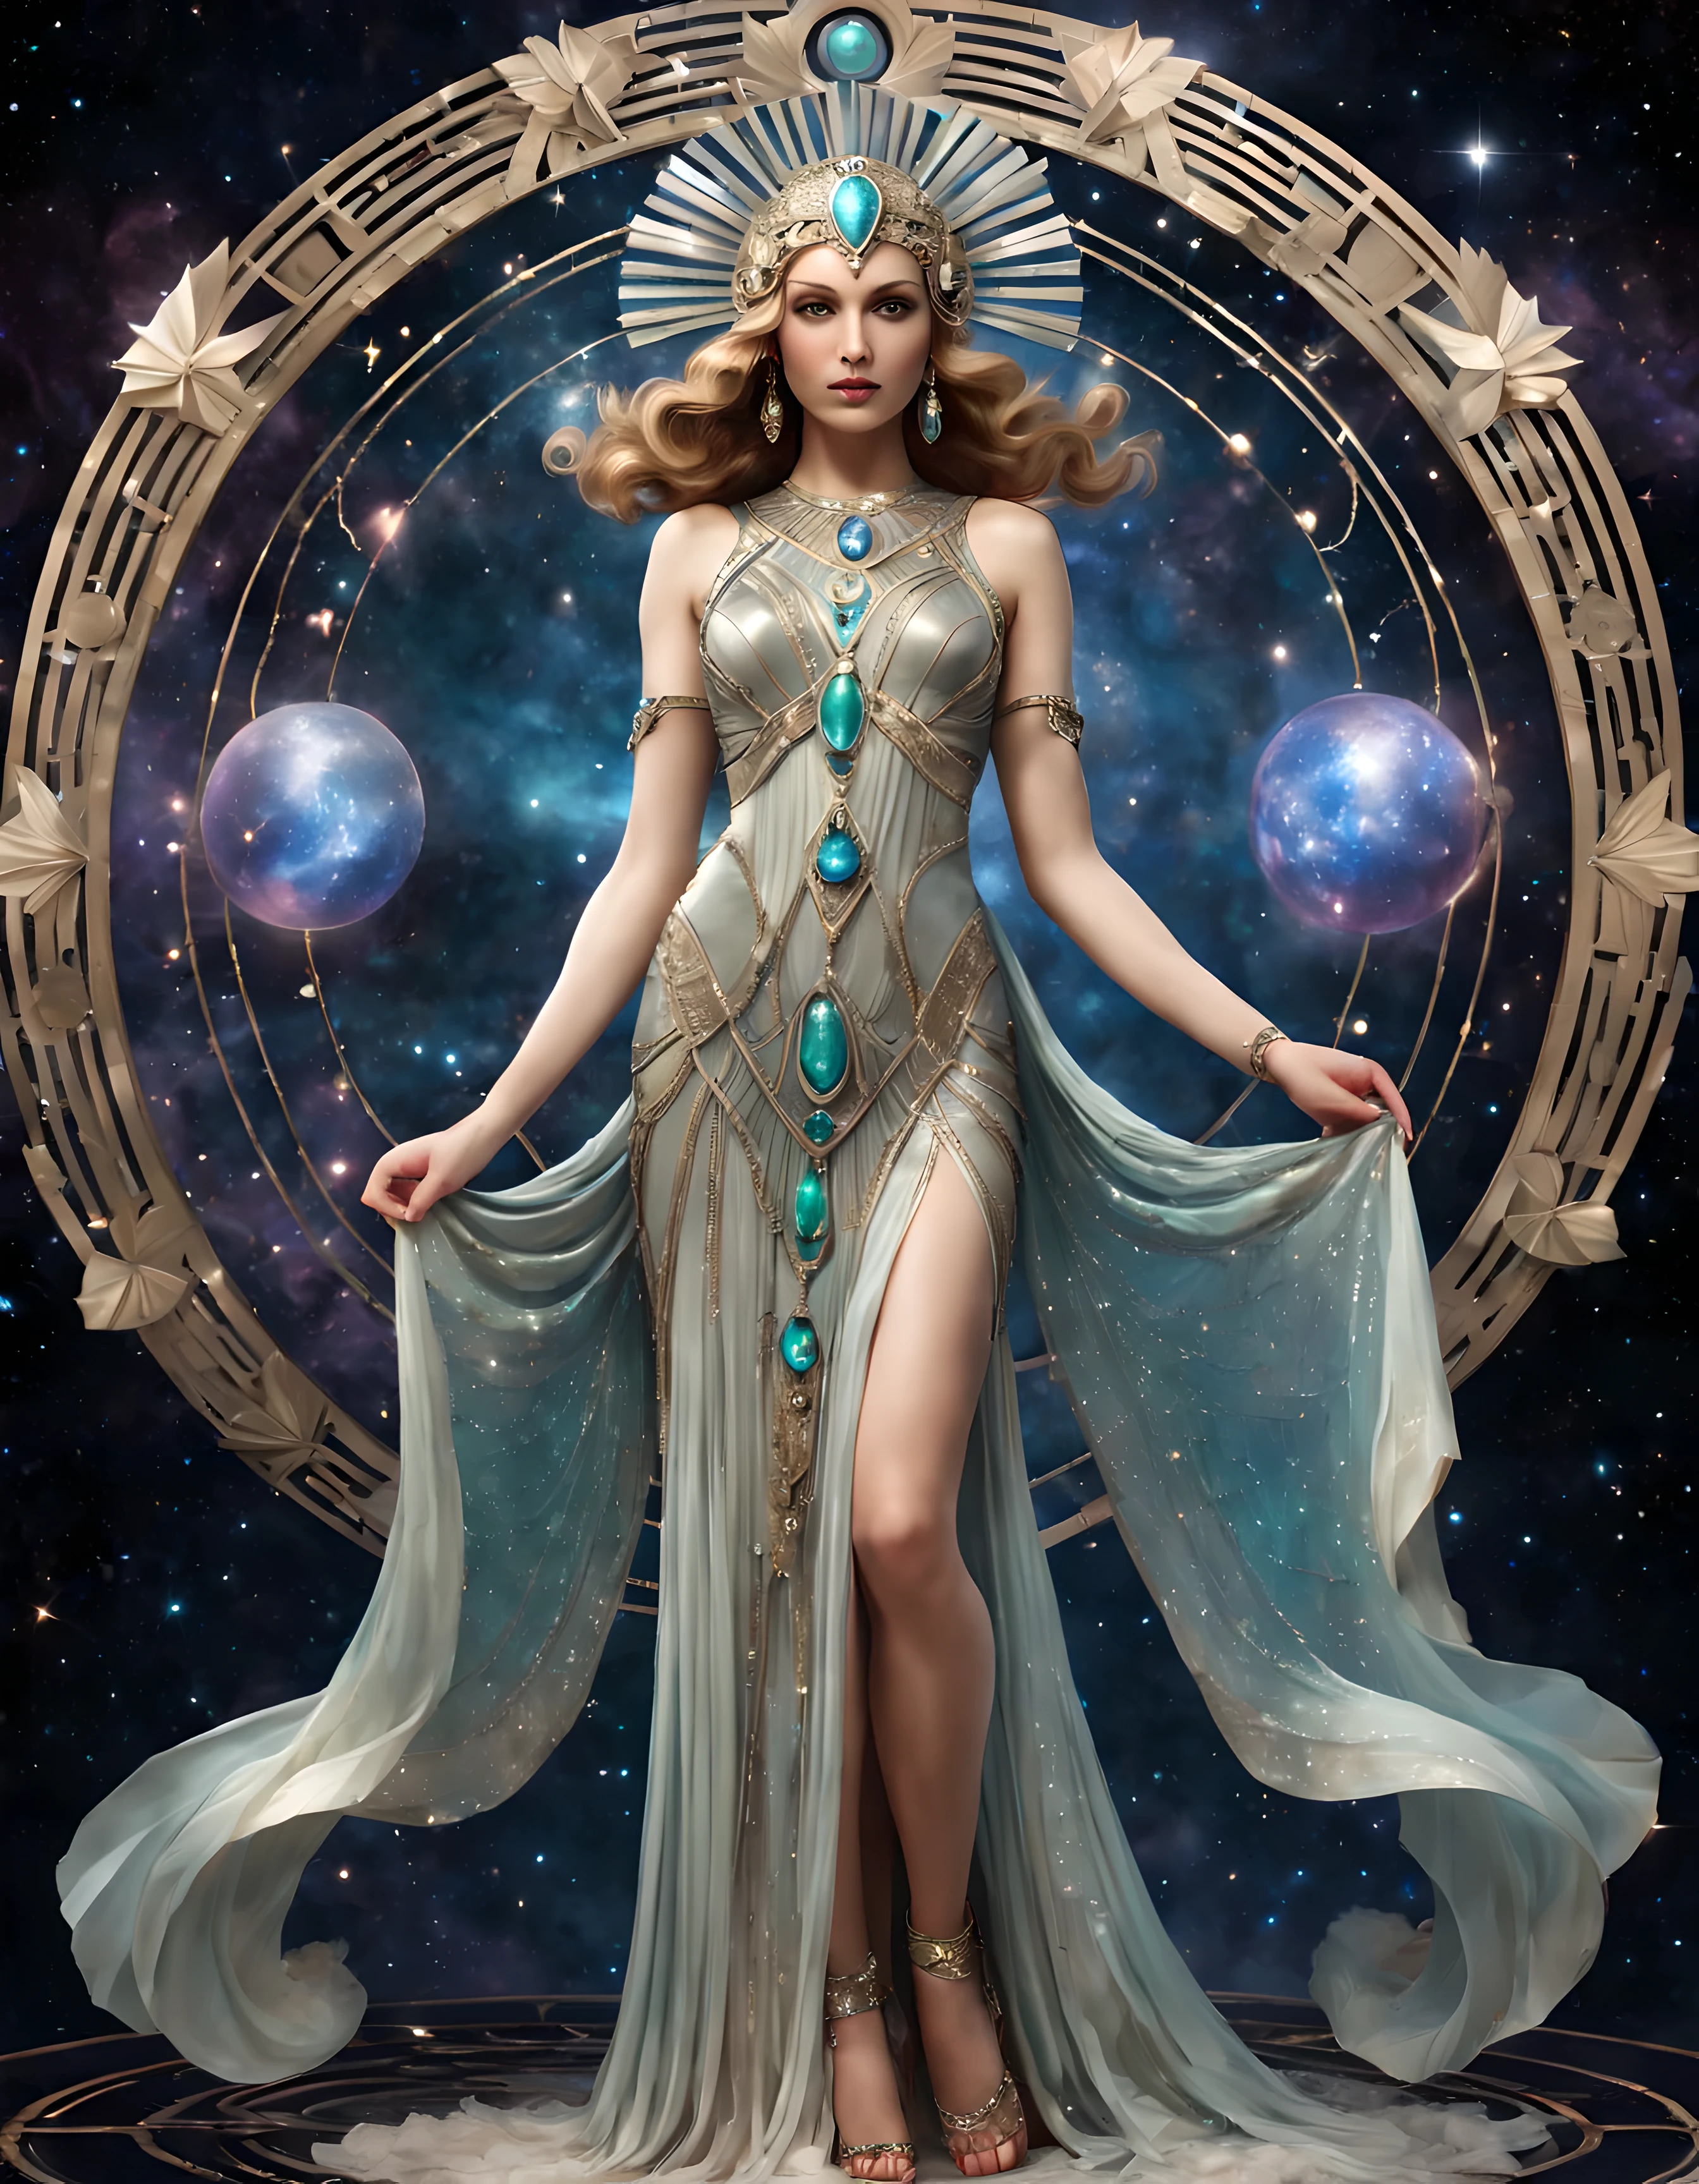 صورة كاملة للجسم لإلهة سماوية جميلة ترتدي فستانًا آسرًا على طراز آرت ديكو مزينًا بملامح أثيرية وأحجار كريمة ثمينة, ((وميض)), الخلفية الكونية. | ((أكثر_التفاصيل))